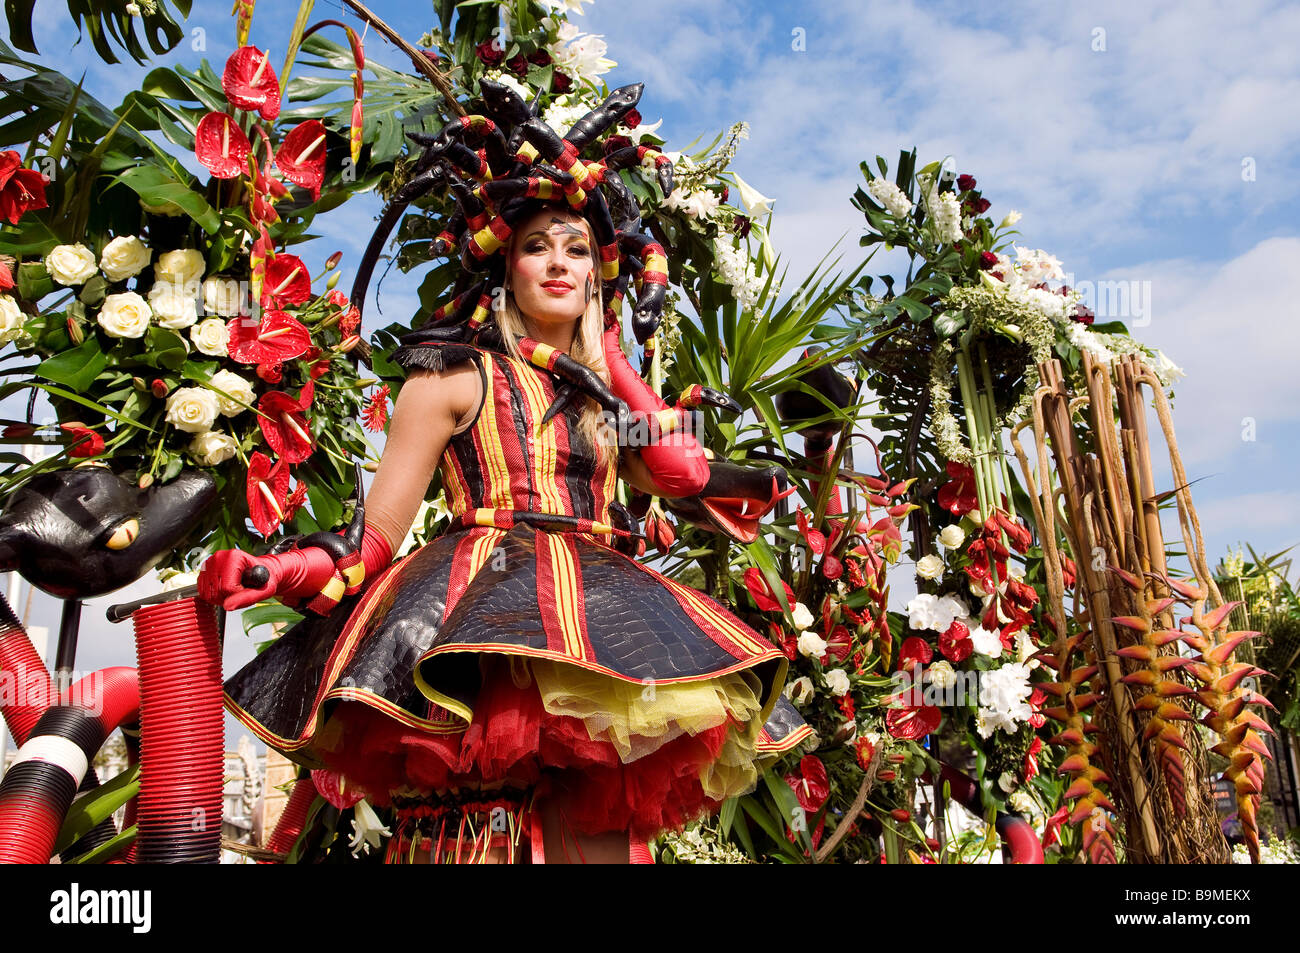 Nicétoile, i costumi mitici del Carnevale di Nizza (Foto) 